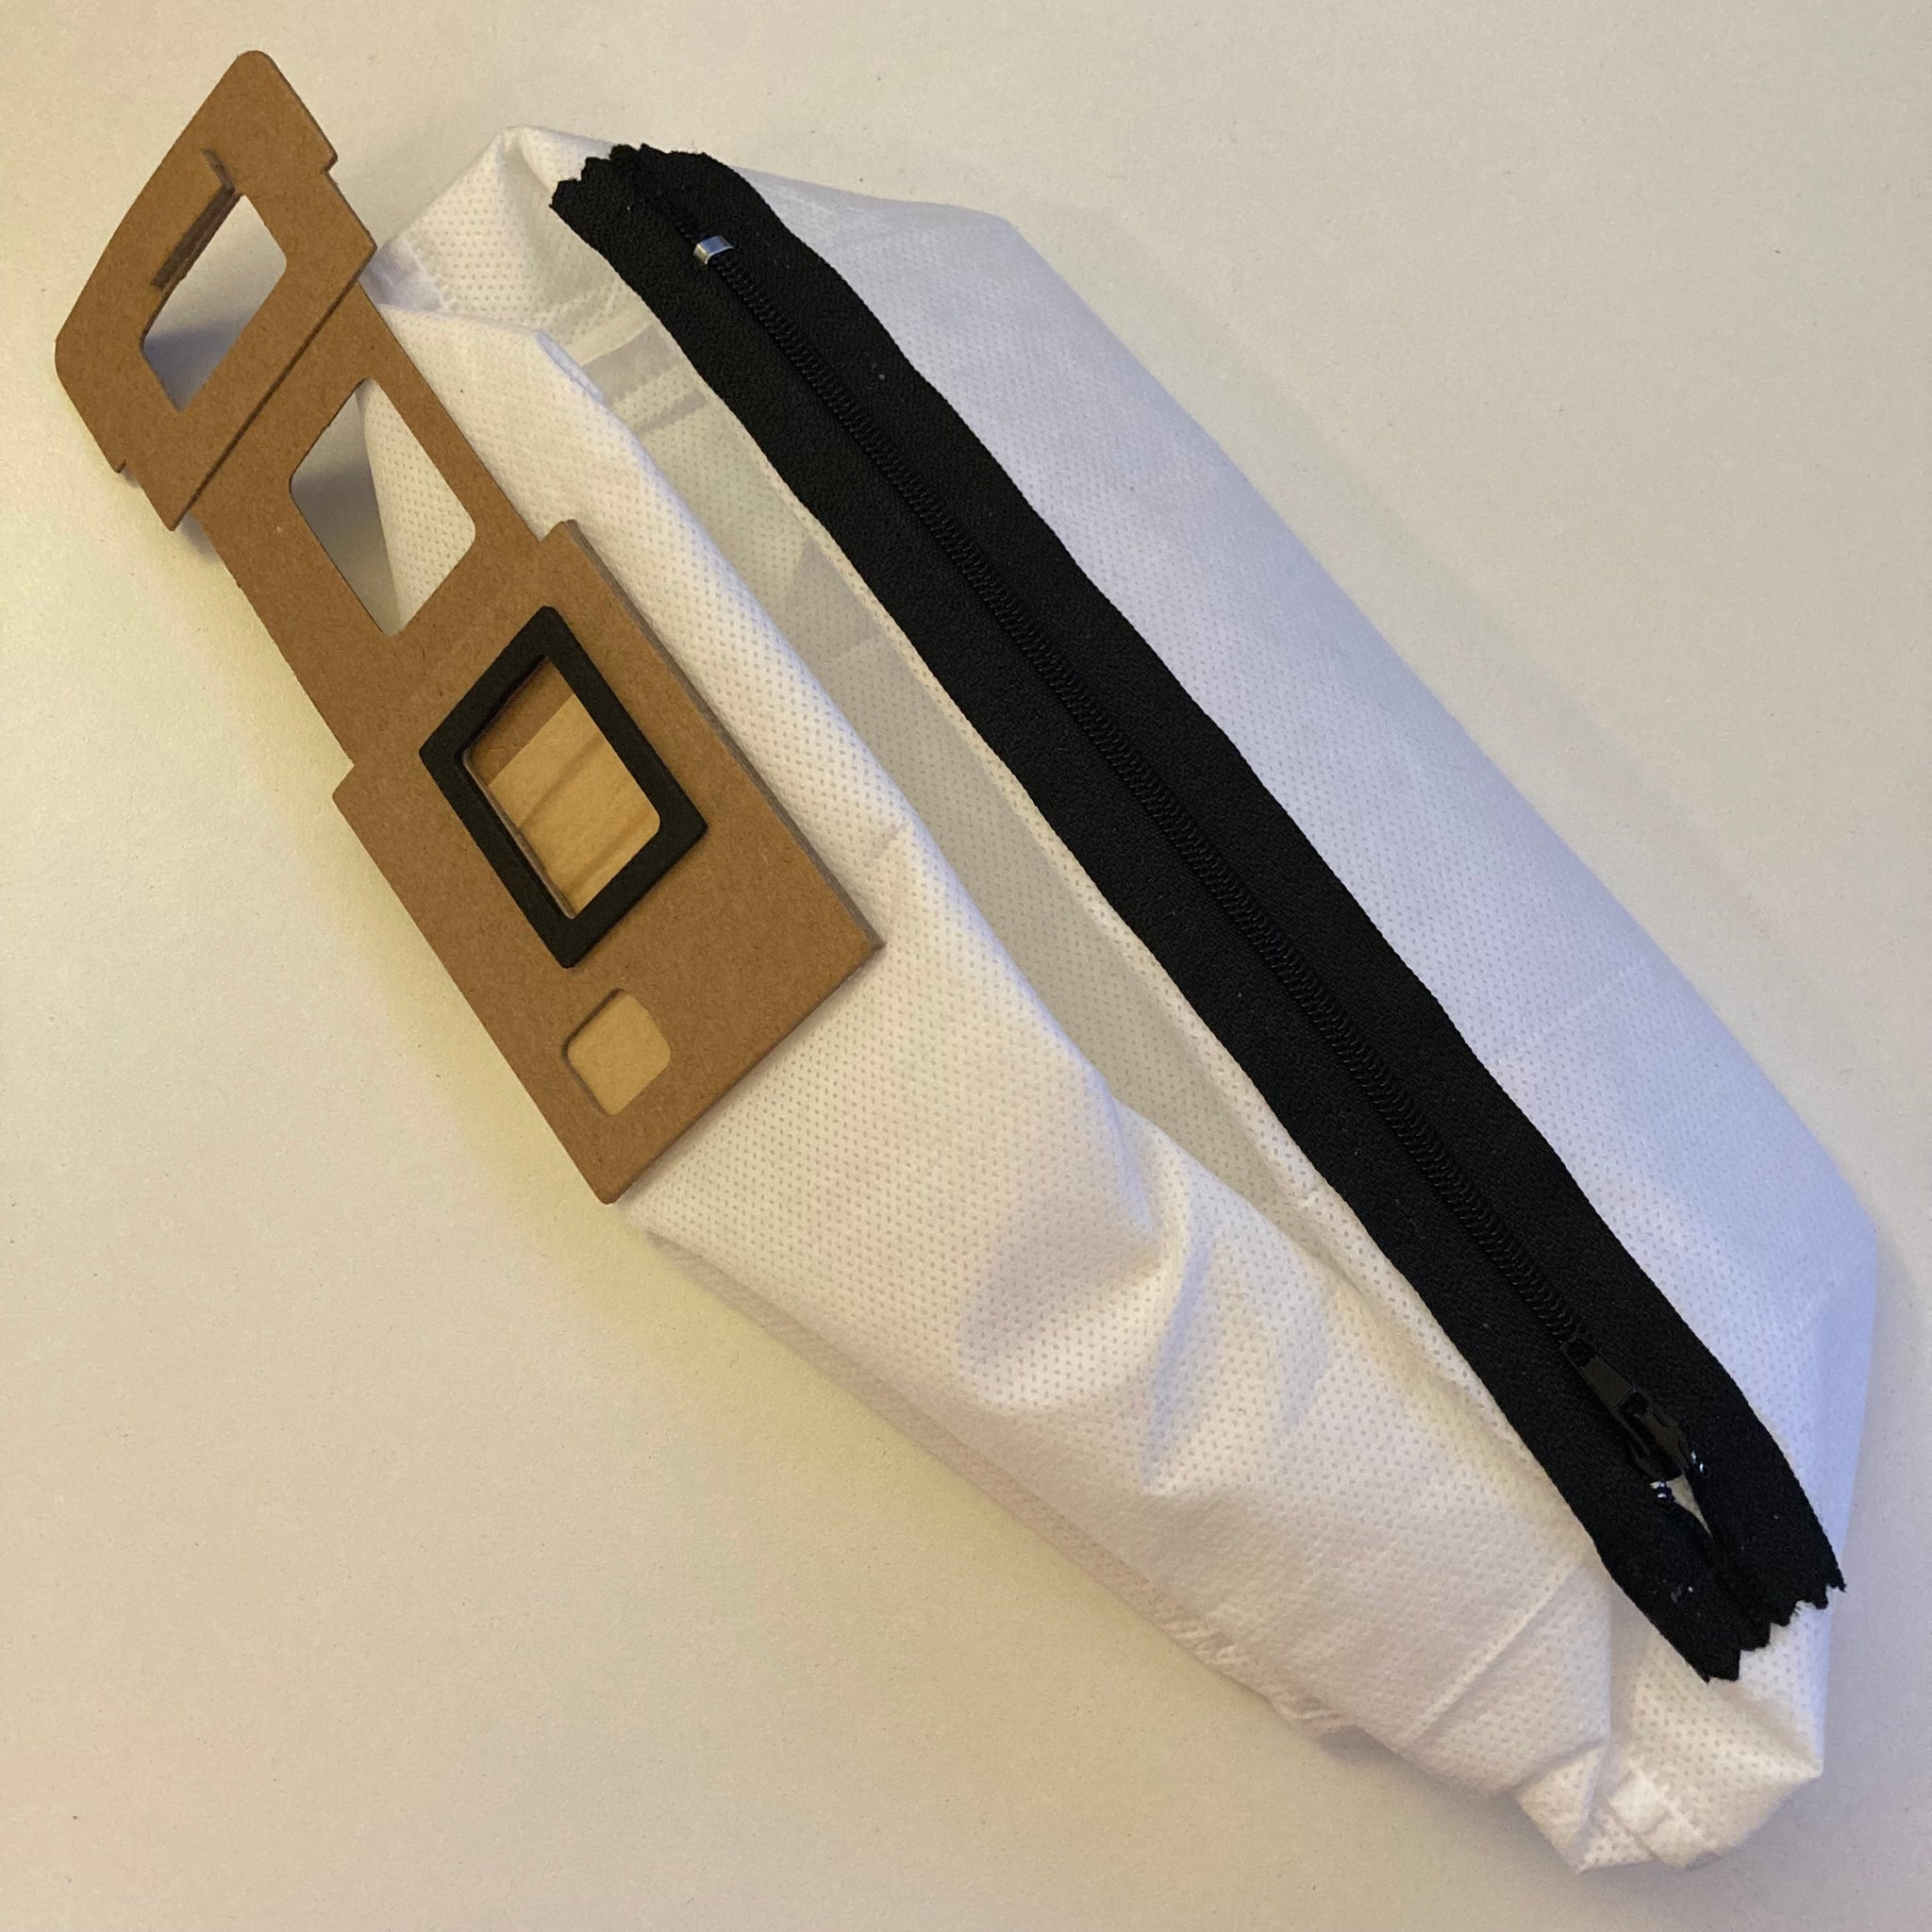 2 PACK!! - Clean Base Zipper Bag - Reusable Vacuum Bag for Roborock S8 Pro  Ultra, S8+, S7 MaxV Ultra, Q5+, Q7+, Q7 Max+ Auto-Empty Dock 